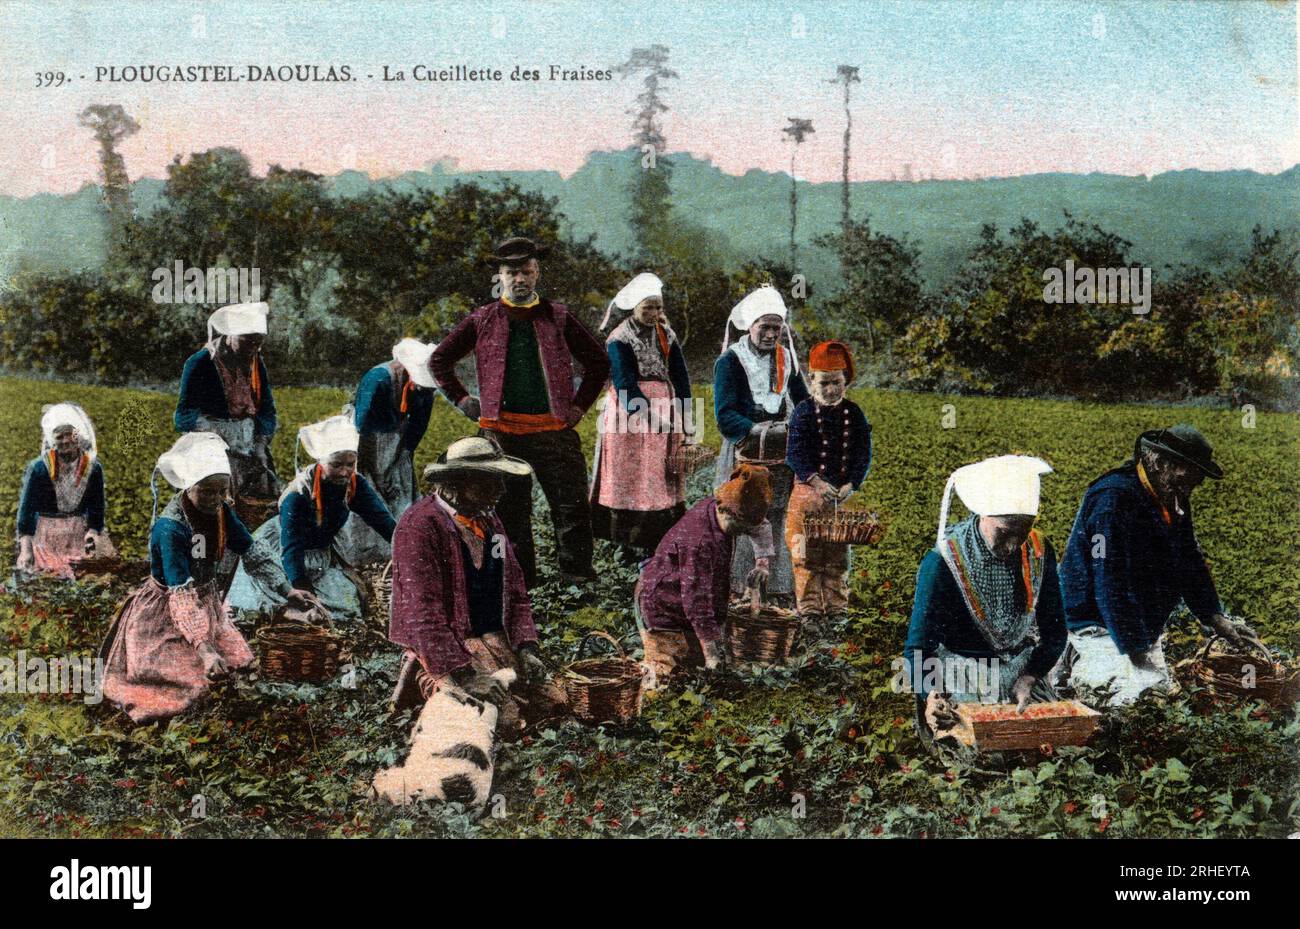 Bretagne, Finistere (29), Plougastel Daoulas (Plougastel-Daoulas) : la cueillette des fraises - Carte postale fin 19eme-20eme siecle Stock Photo